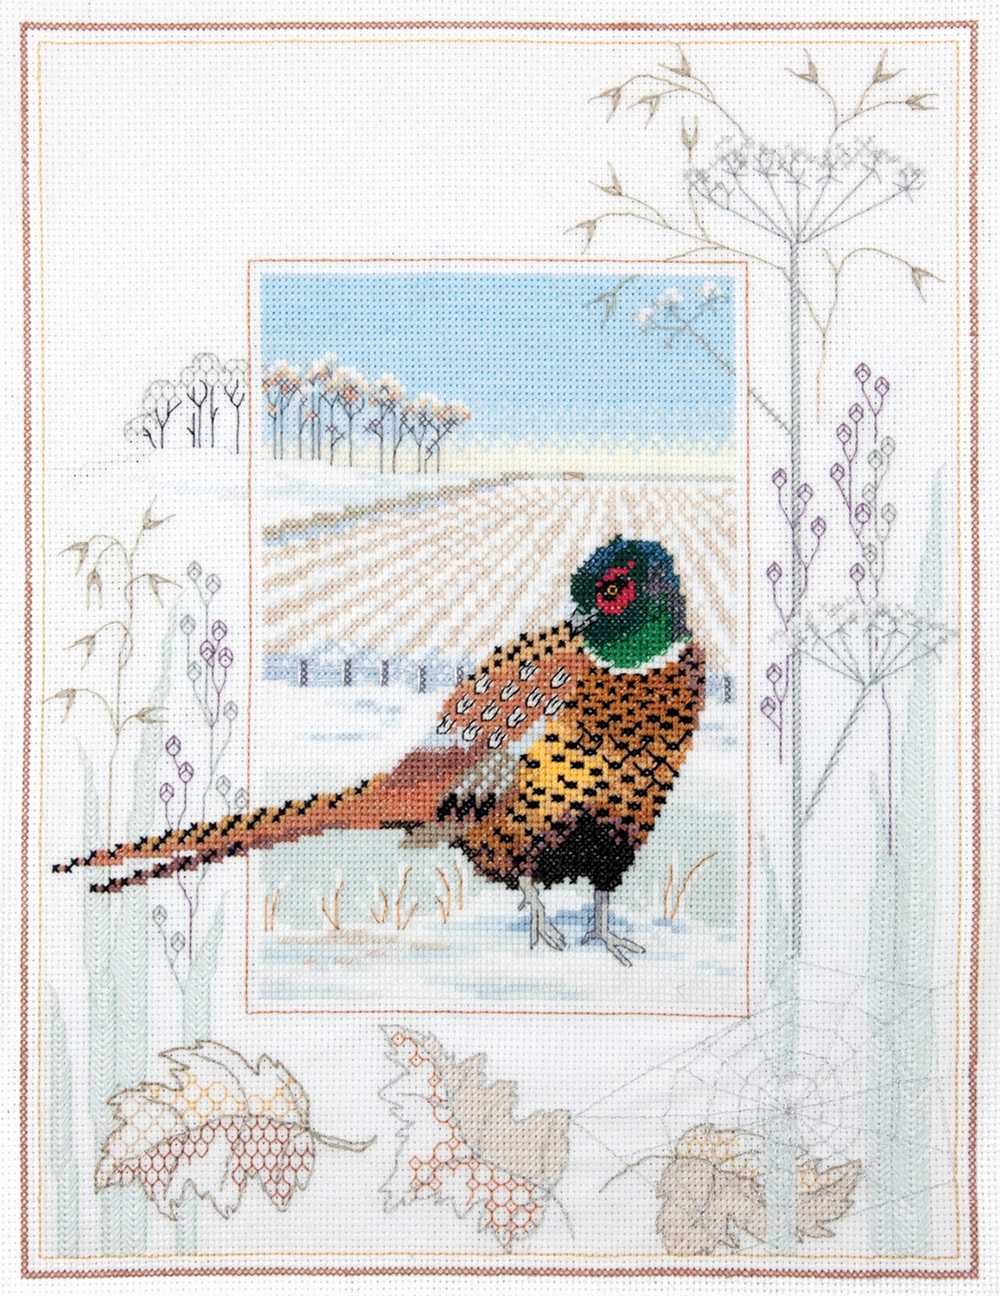 Wildlife - Pheasant Cross Stitch Kit by Derwentwater Designs